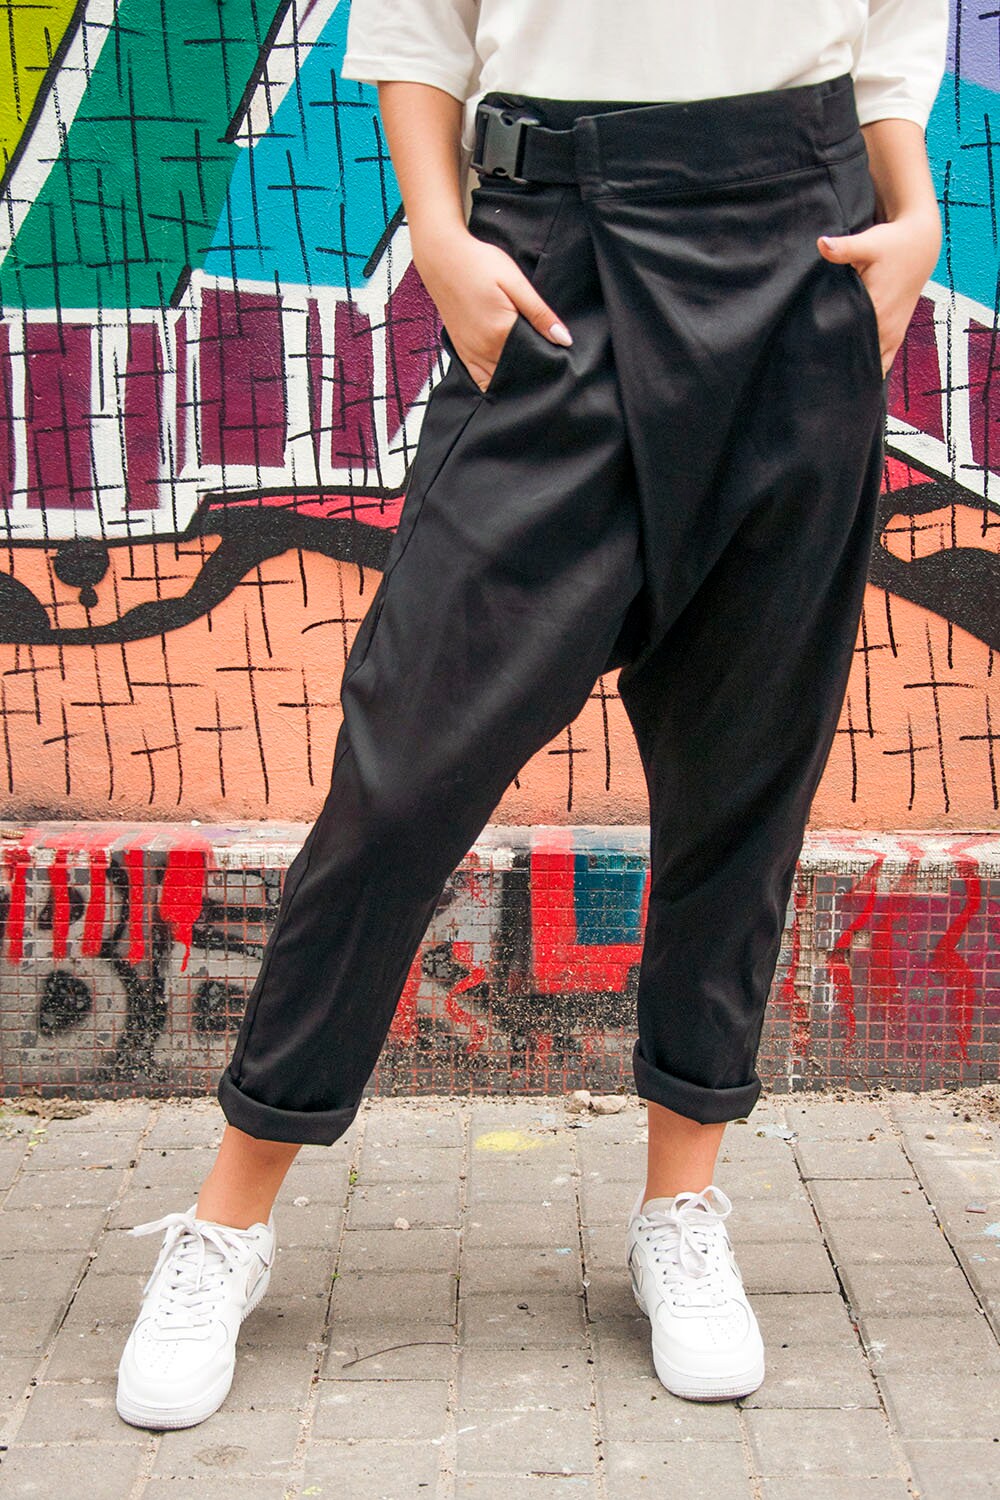 Pants with belt "Gravi", black wrap pants, cyberpunk pants, street style wear